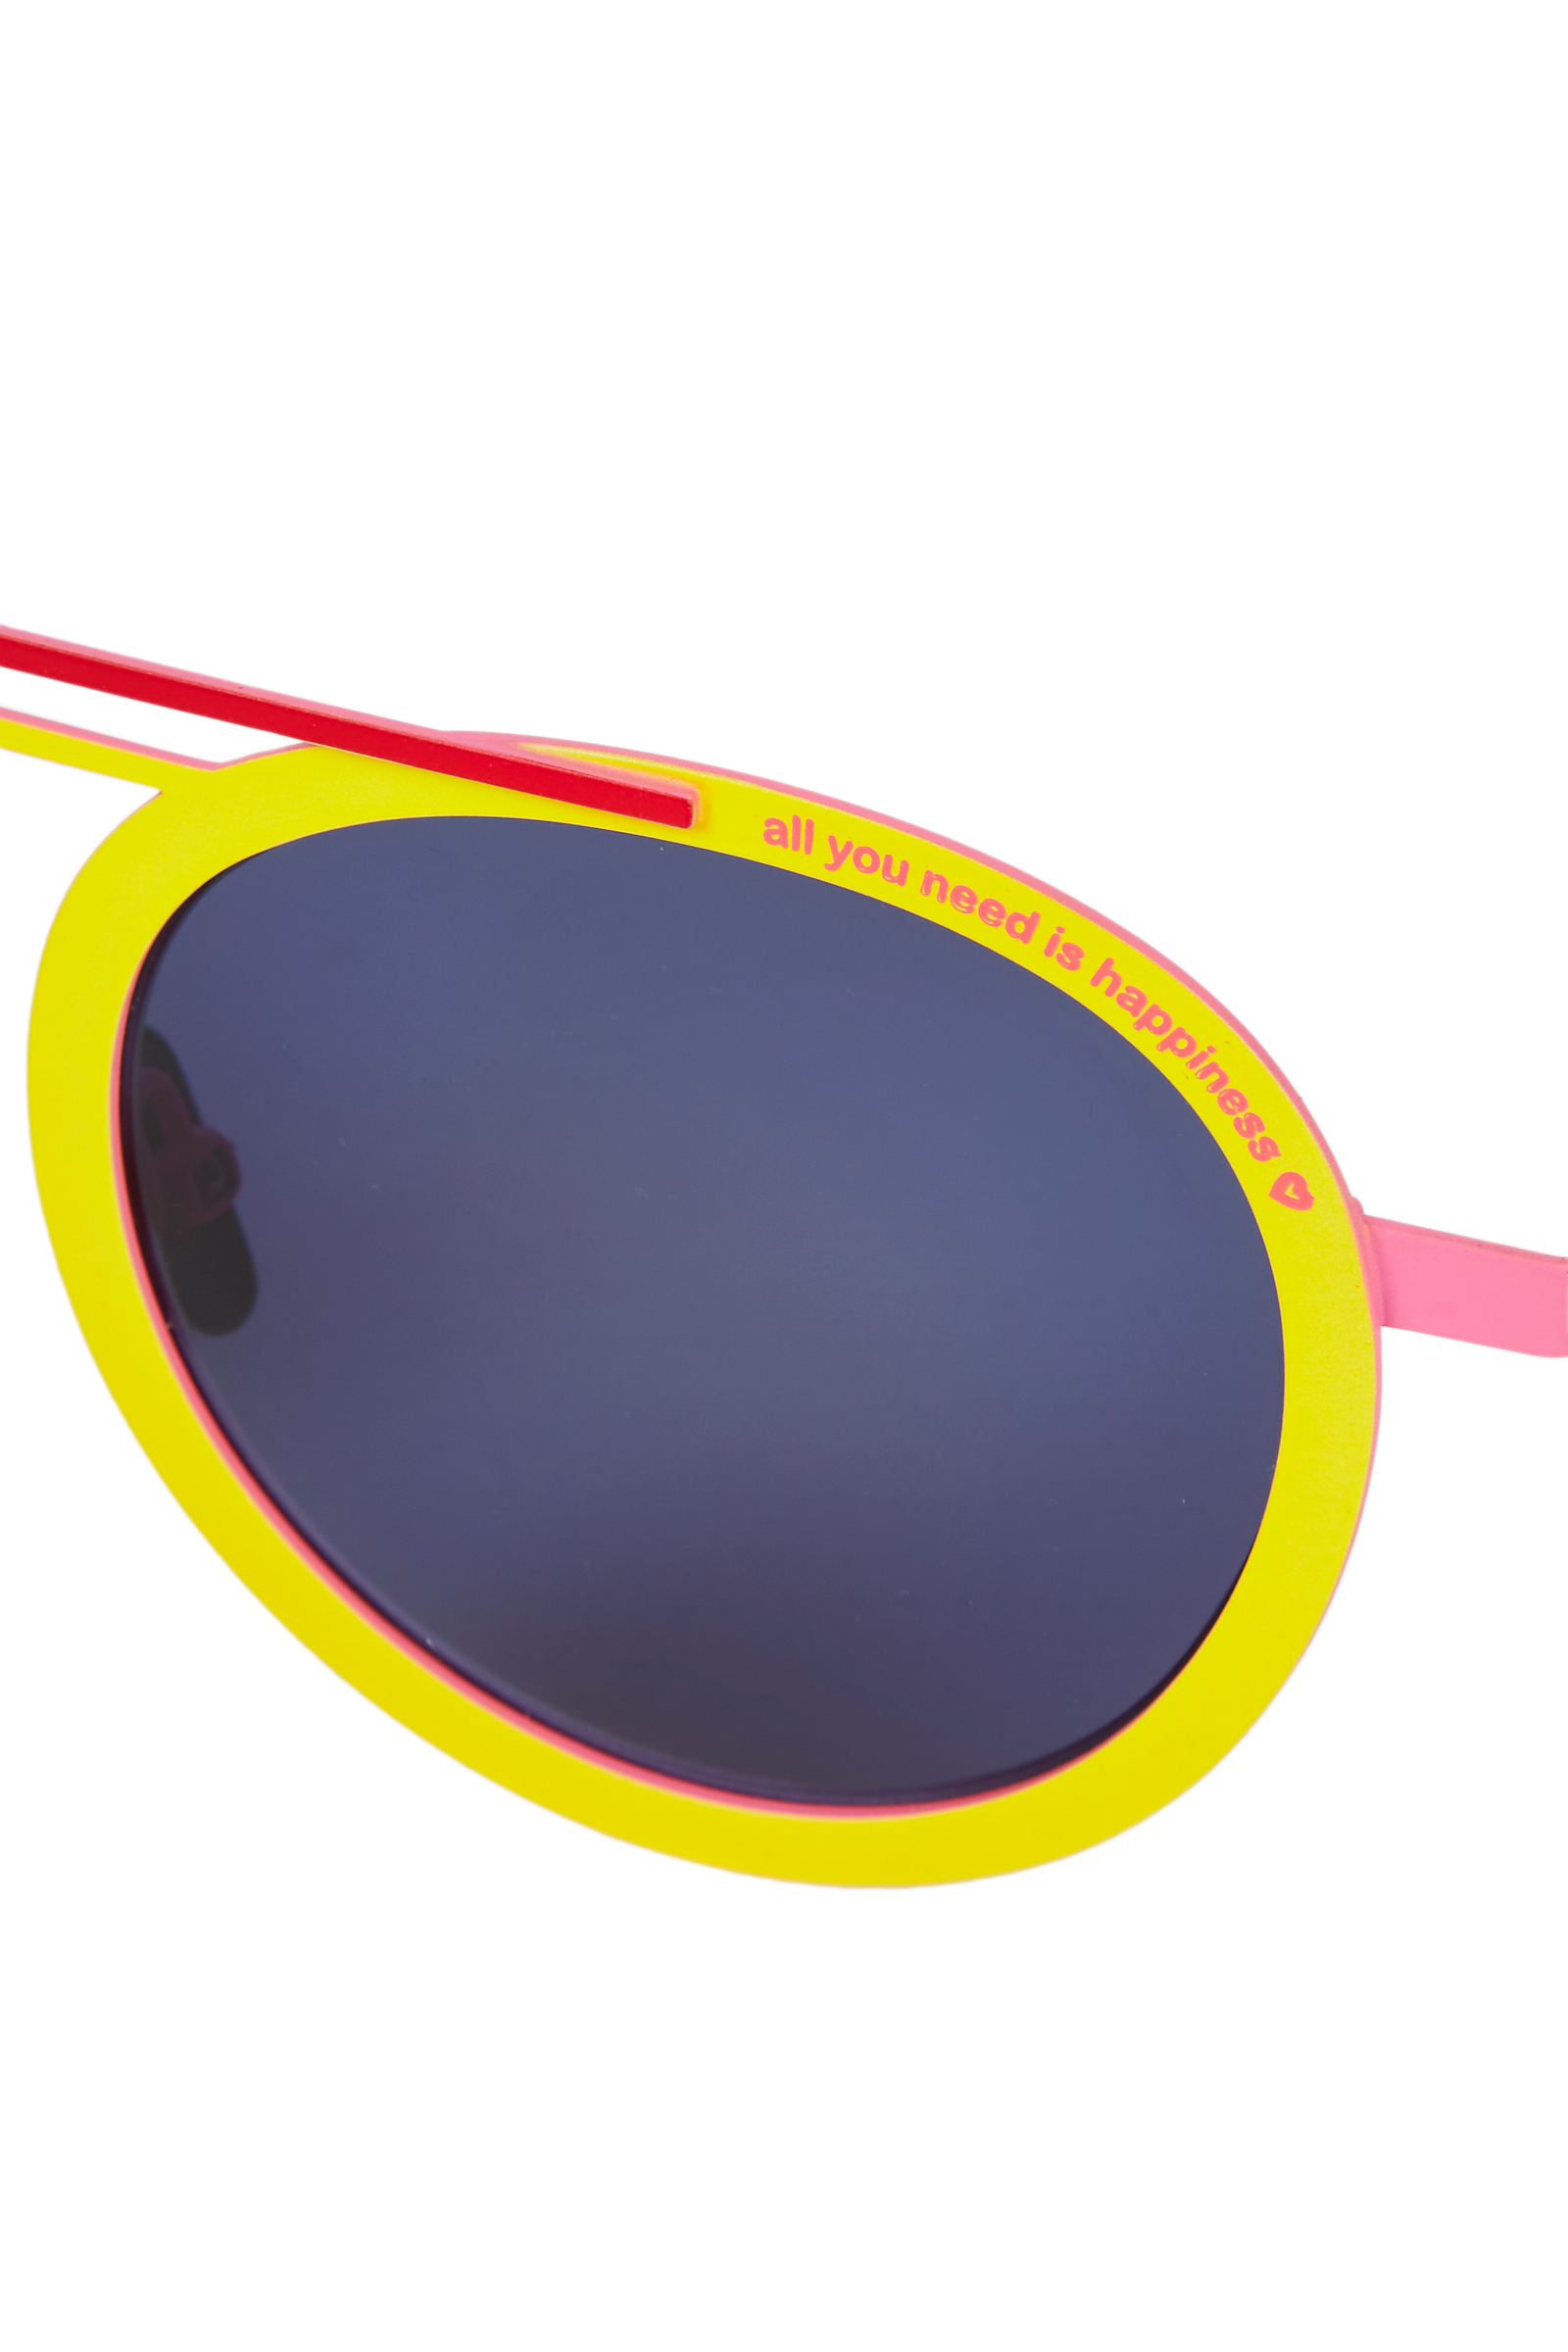 Mira Mikati x La Petite Lunette Rouge Sunglasses 